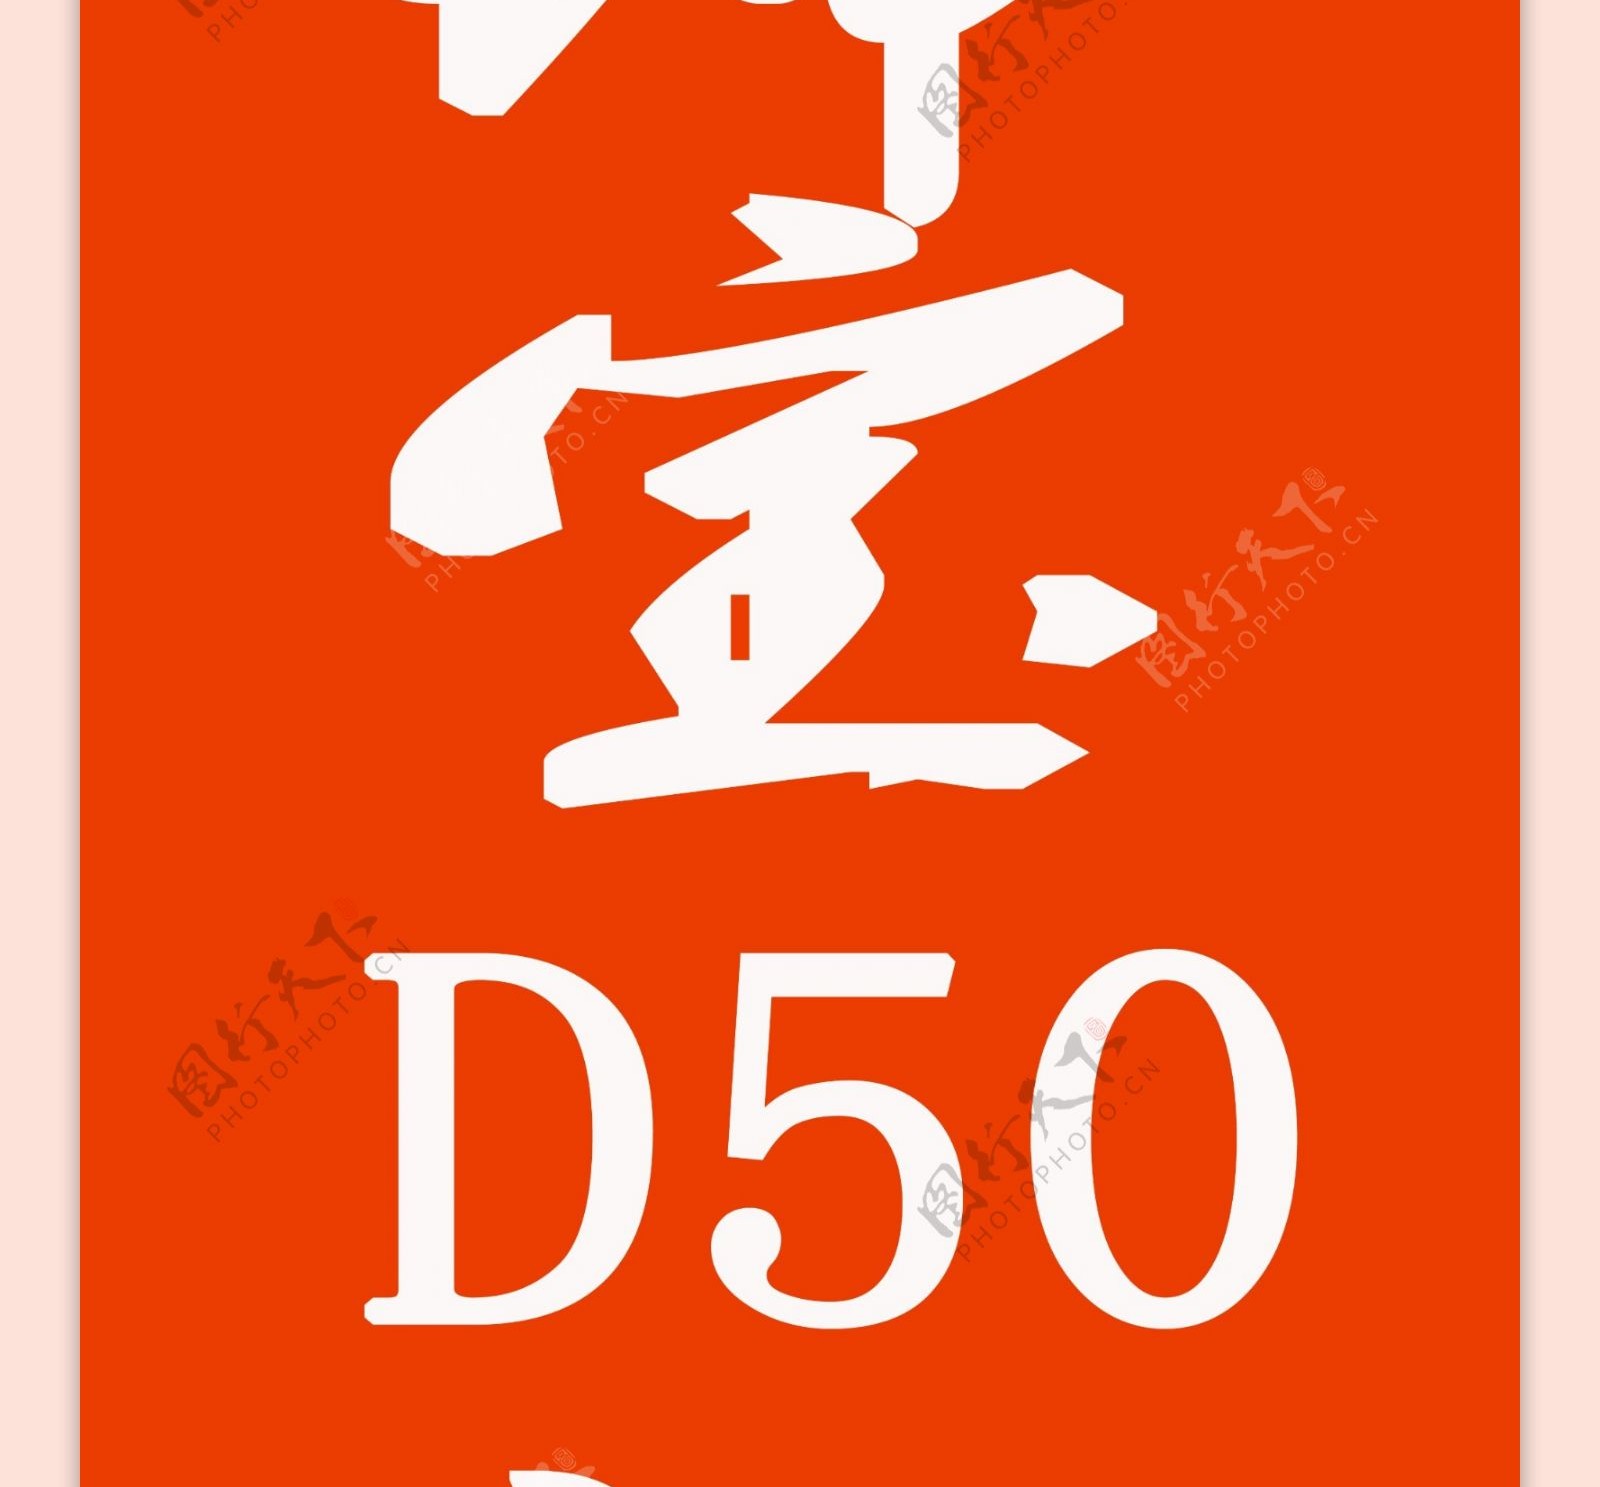 北京汽车绅宝D50道旗图片